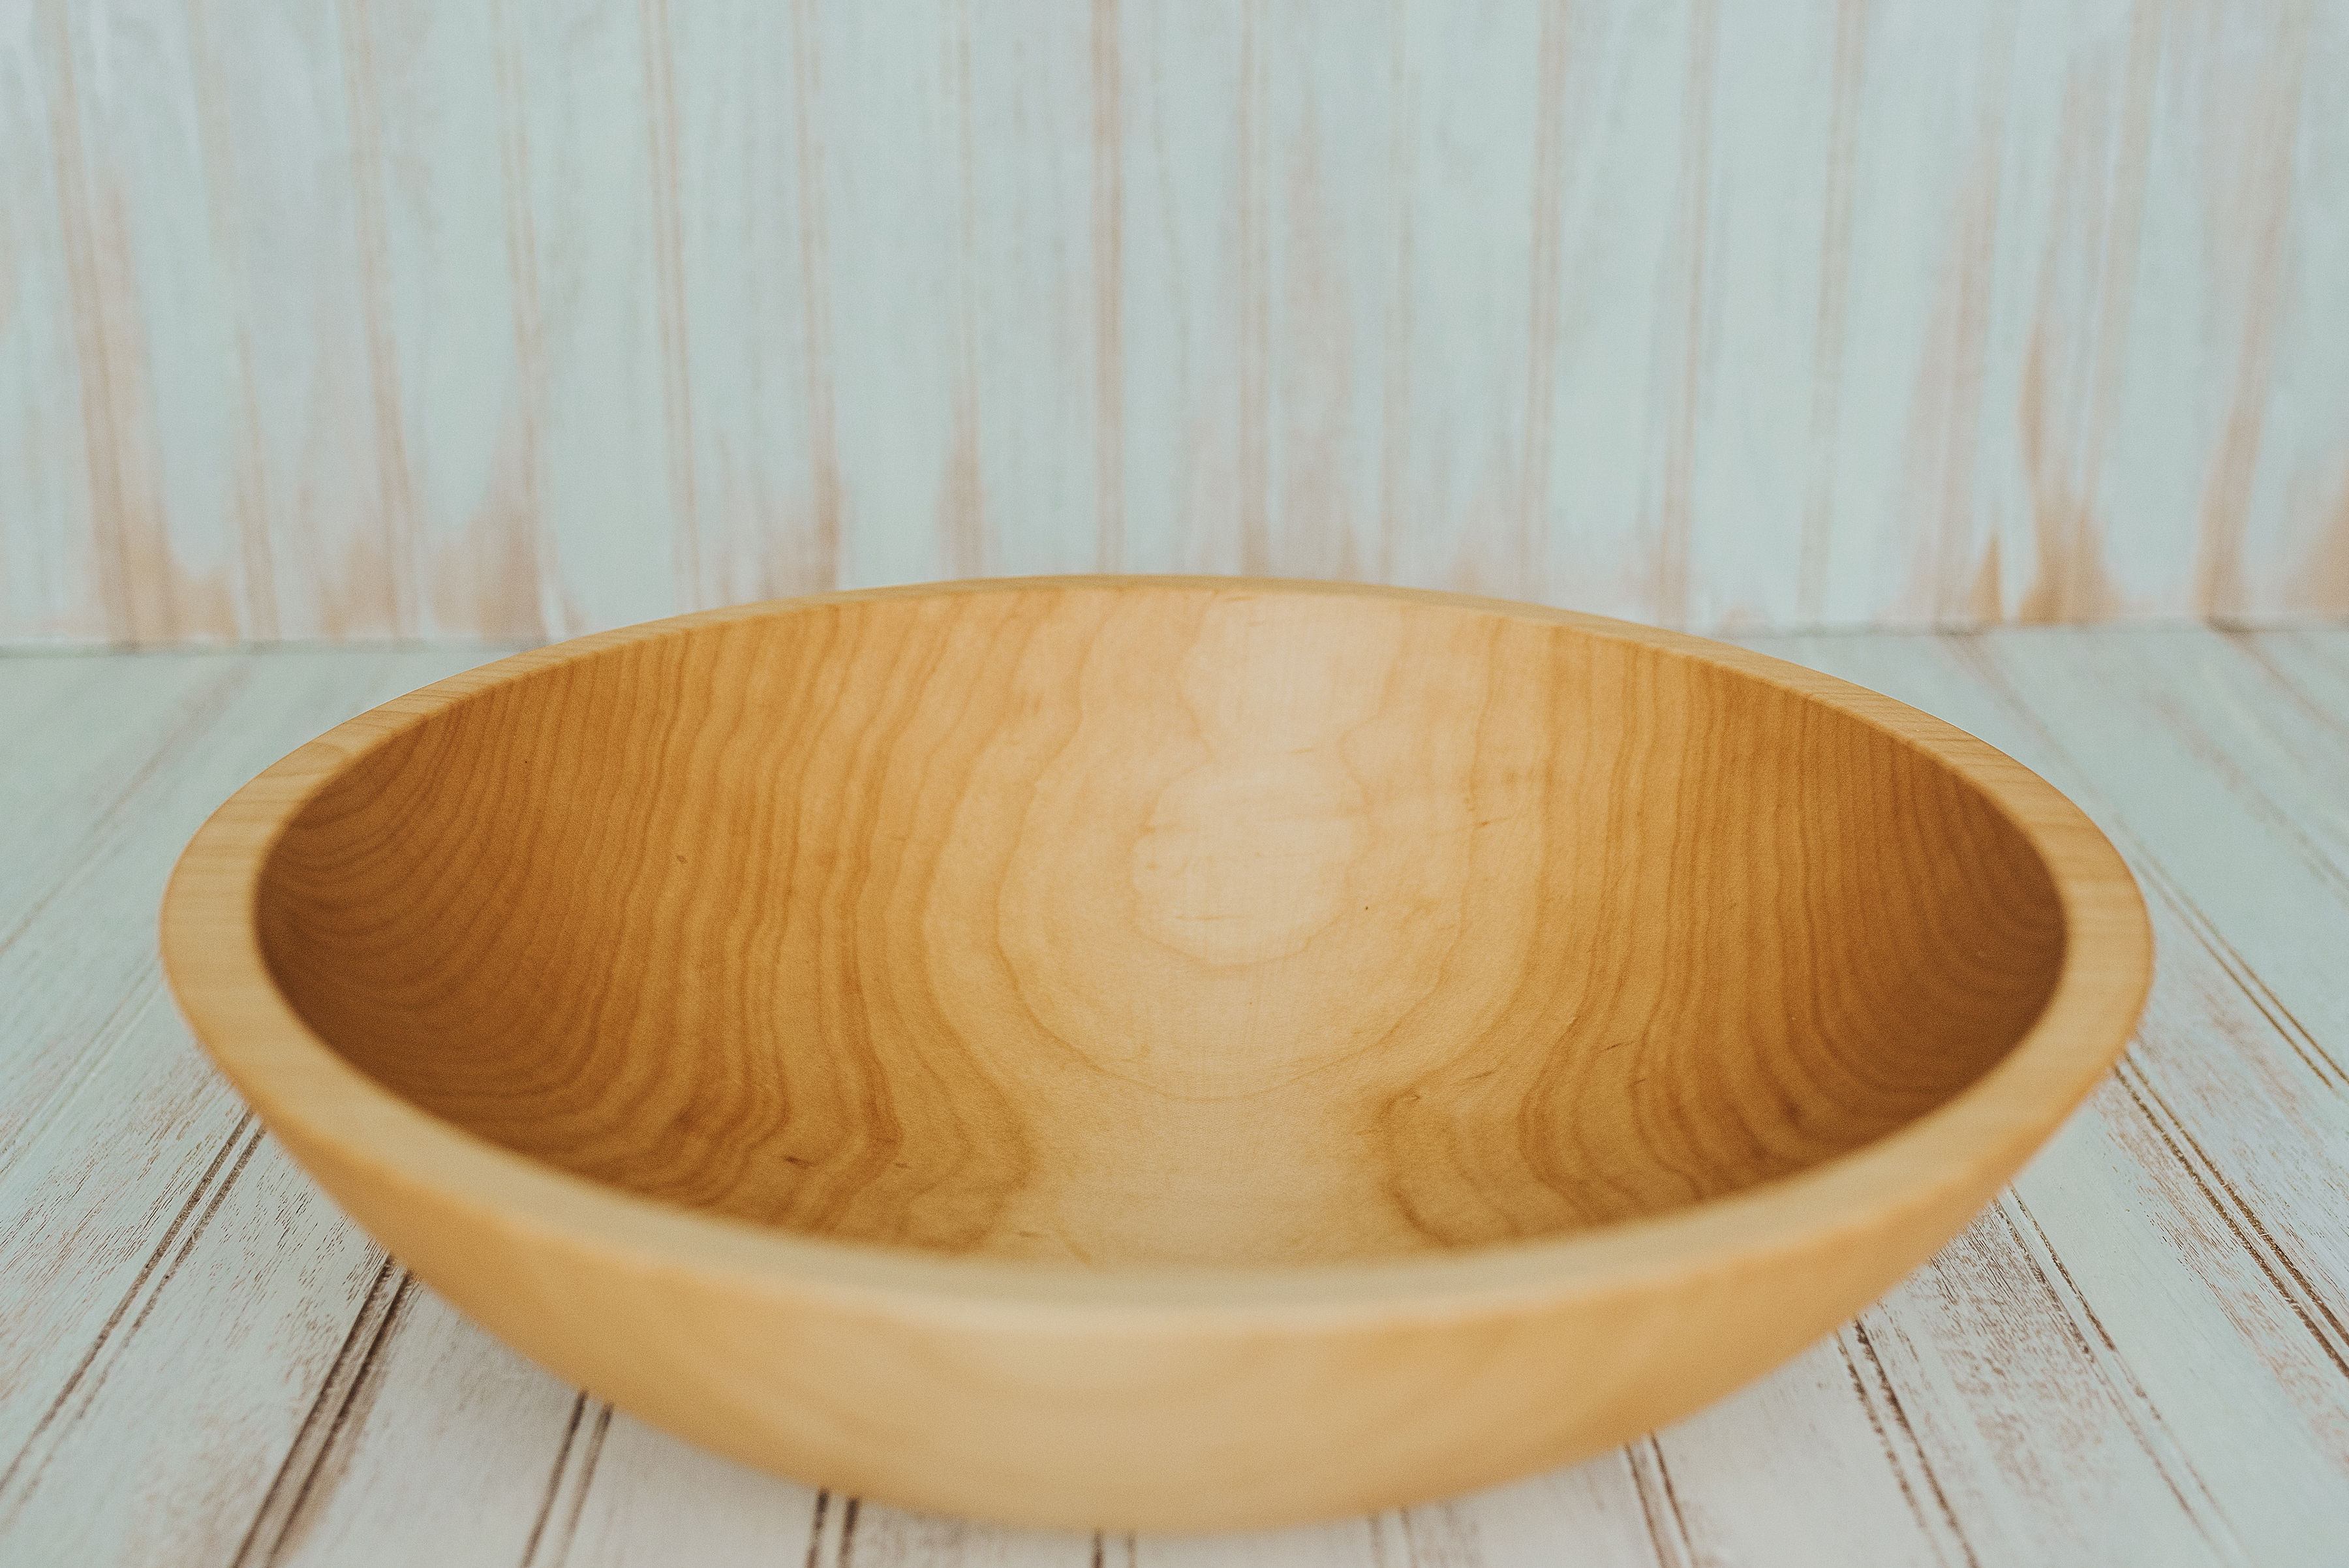 Fiddleback Maple bowl